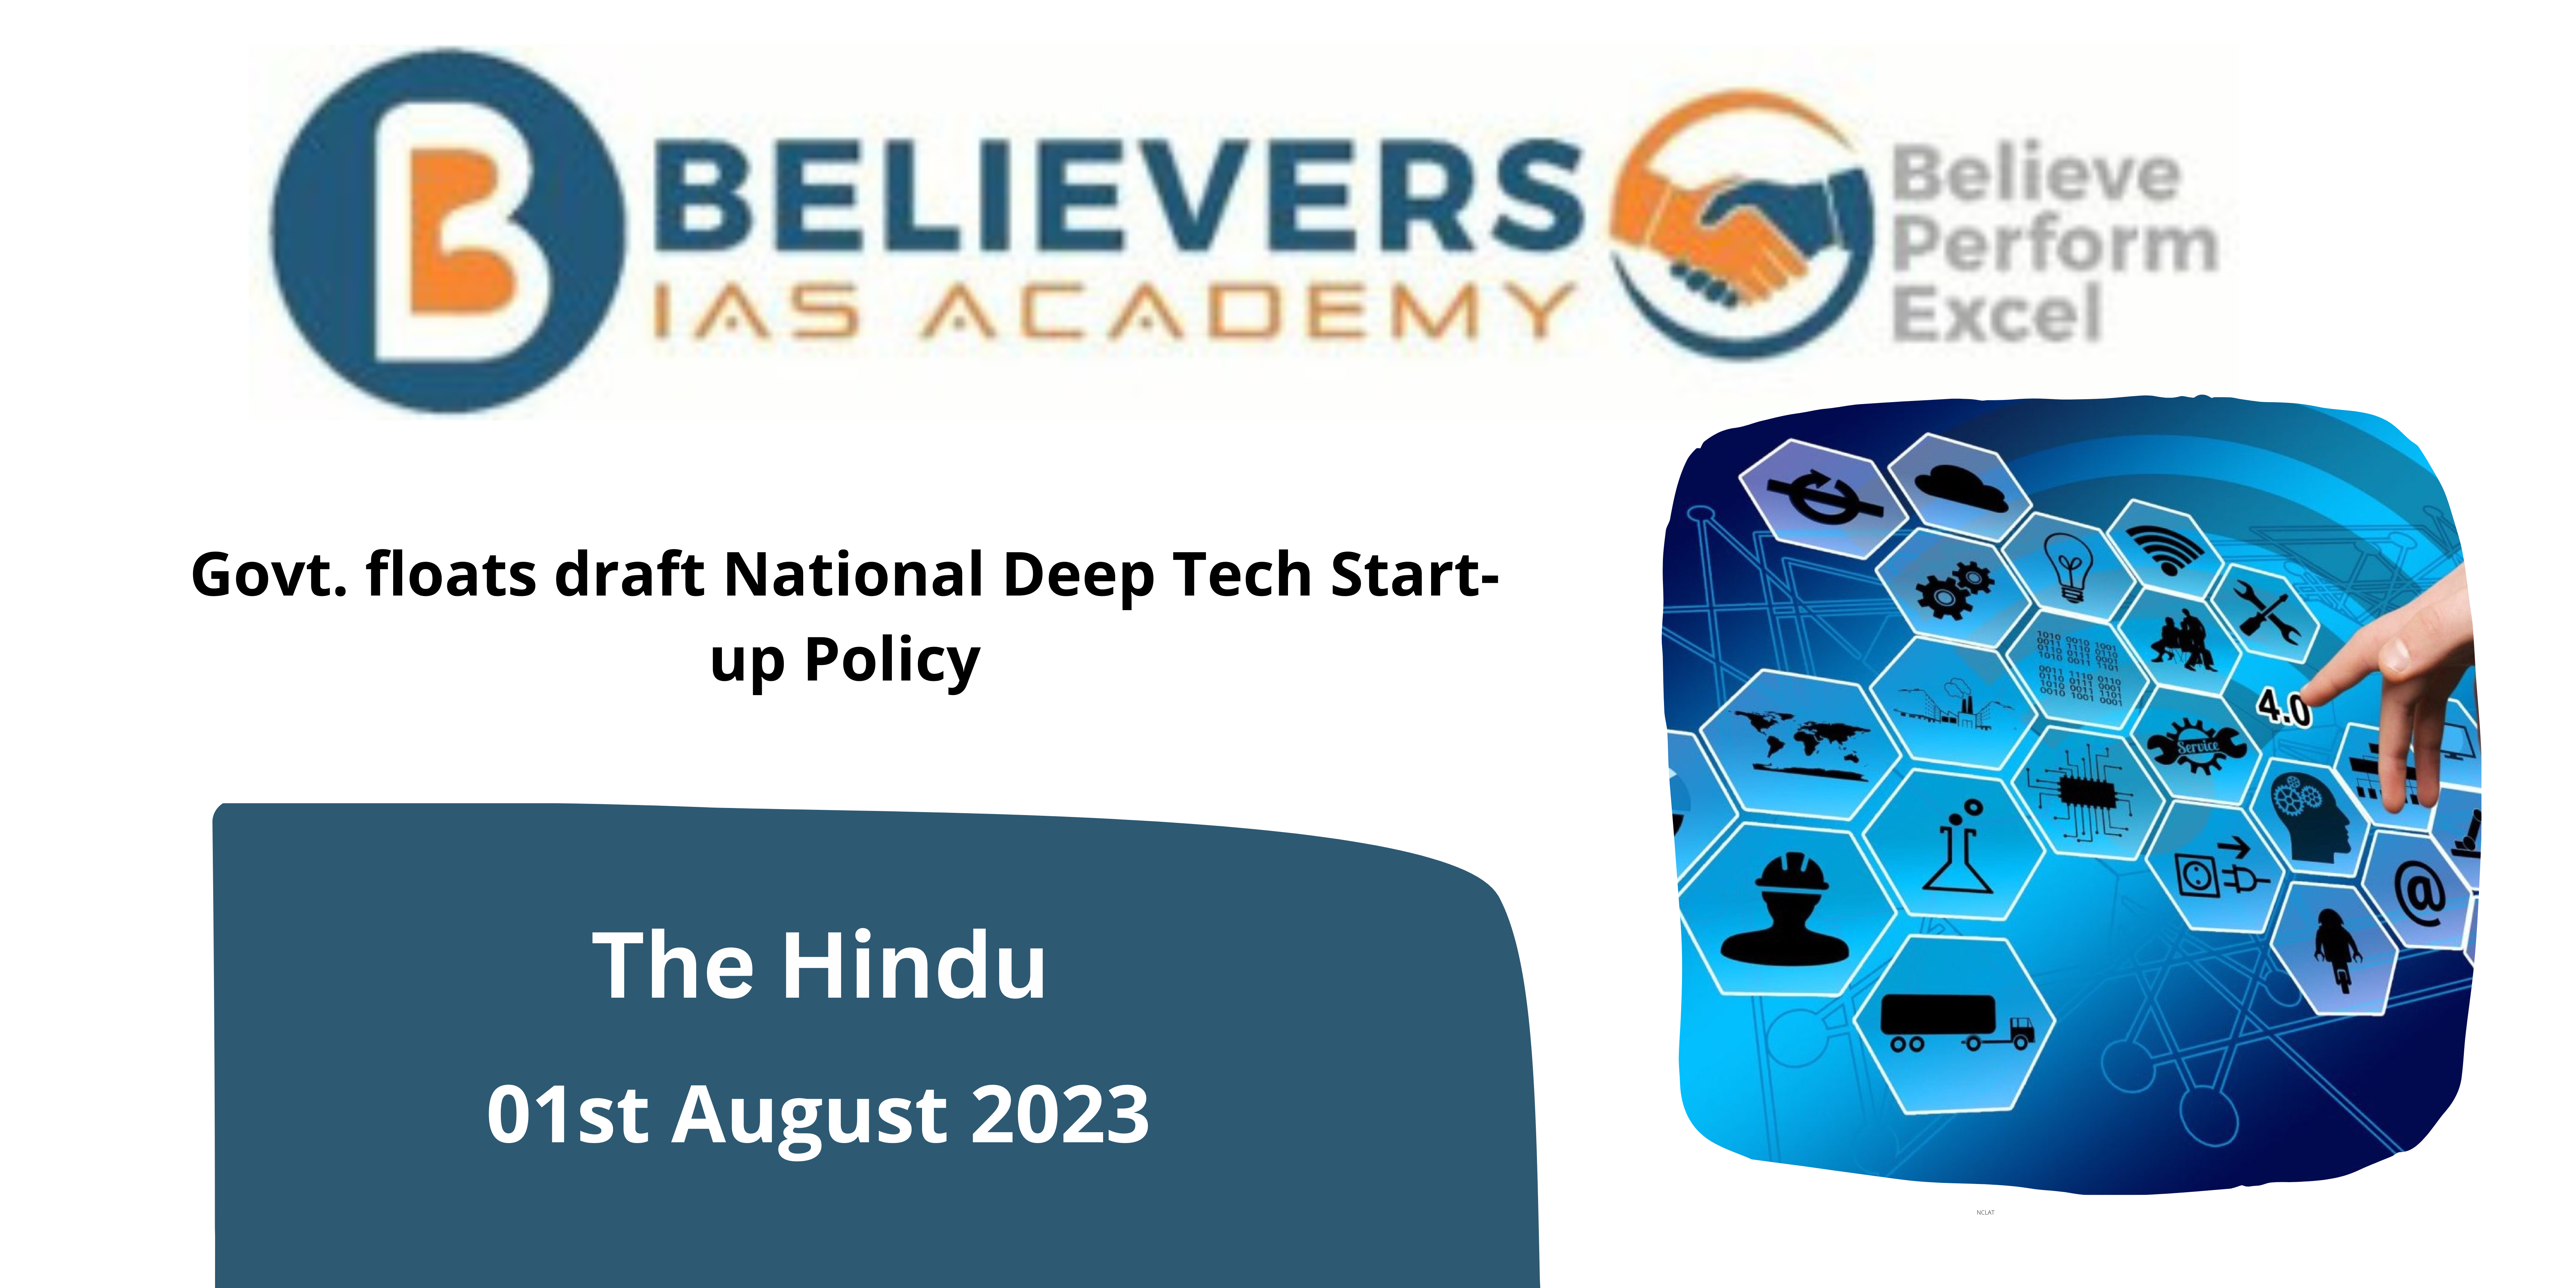 Govt. floats draft National Deep Tech Start-up Policy